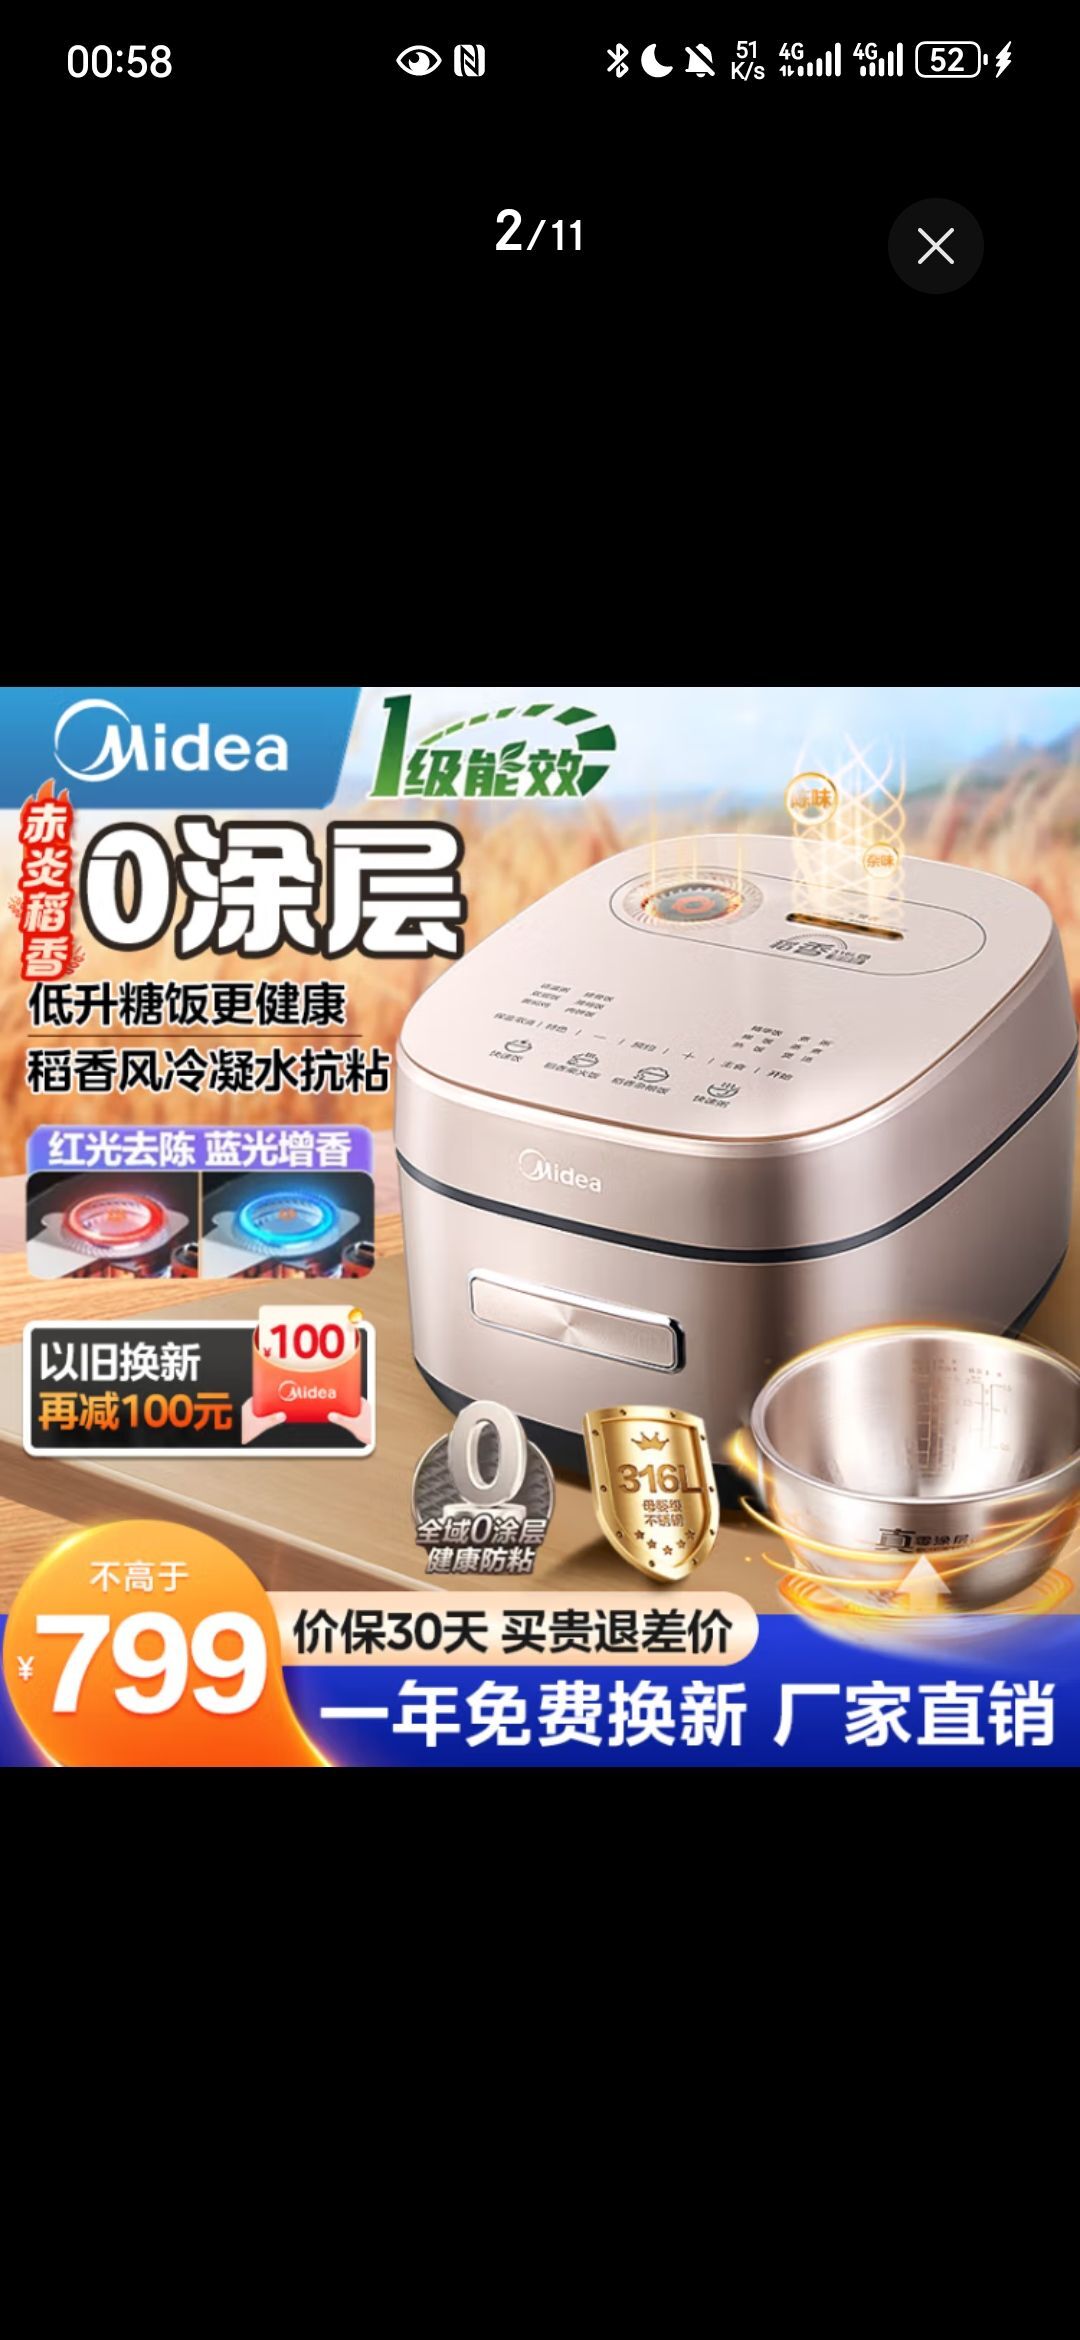 Midea 美的 赤炎稻香 MB-HS453S 电饭煲 券后499.05元